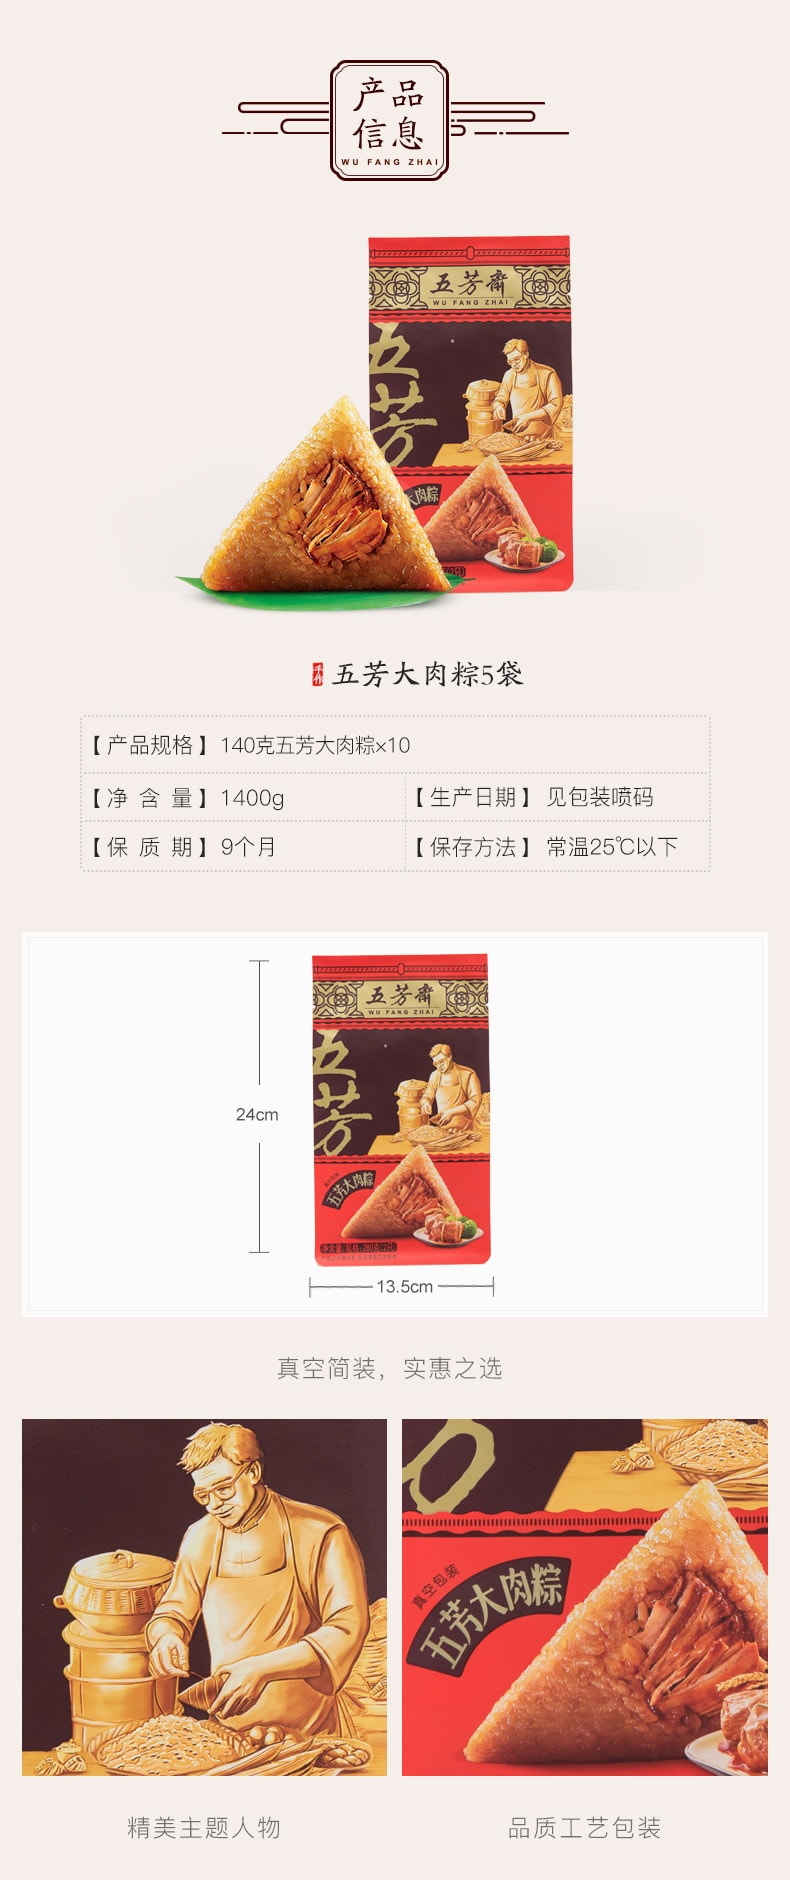 Wufangzhai Zongzi Origin Direct Mail Glutinous Rice Zongzi Jiaxing Specialty Handmade Zongzi 280g*1 Bag